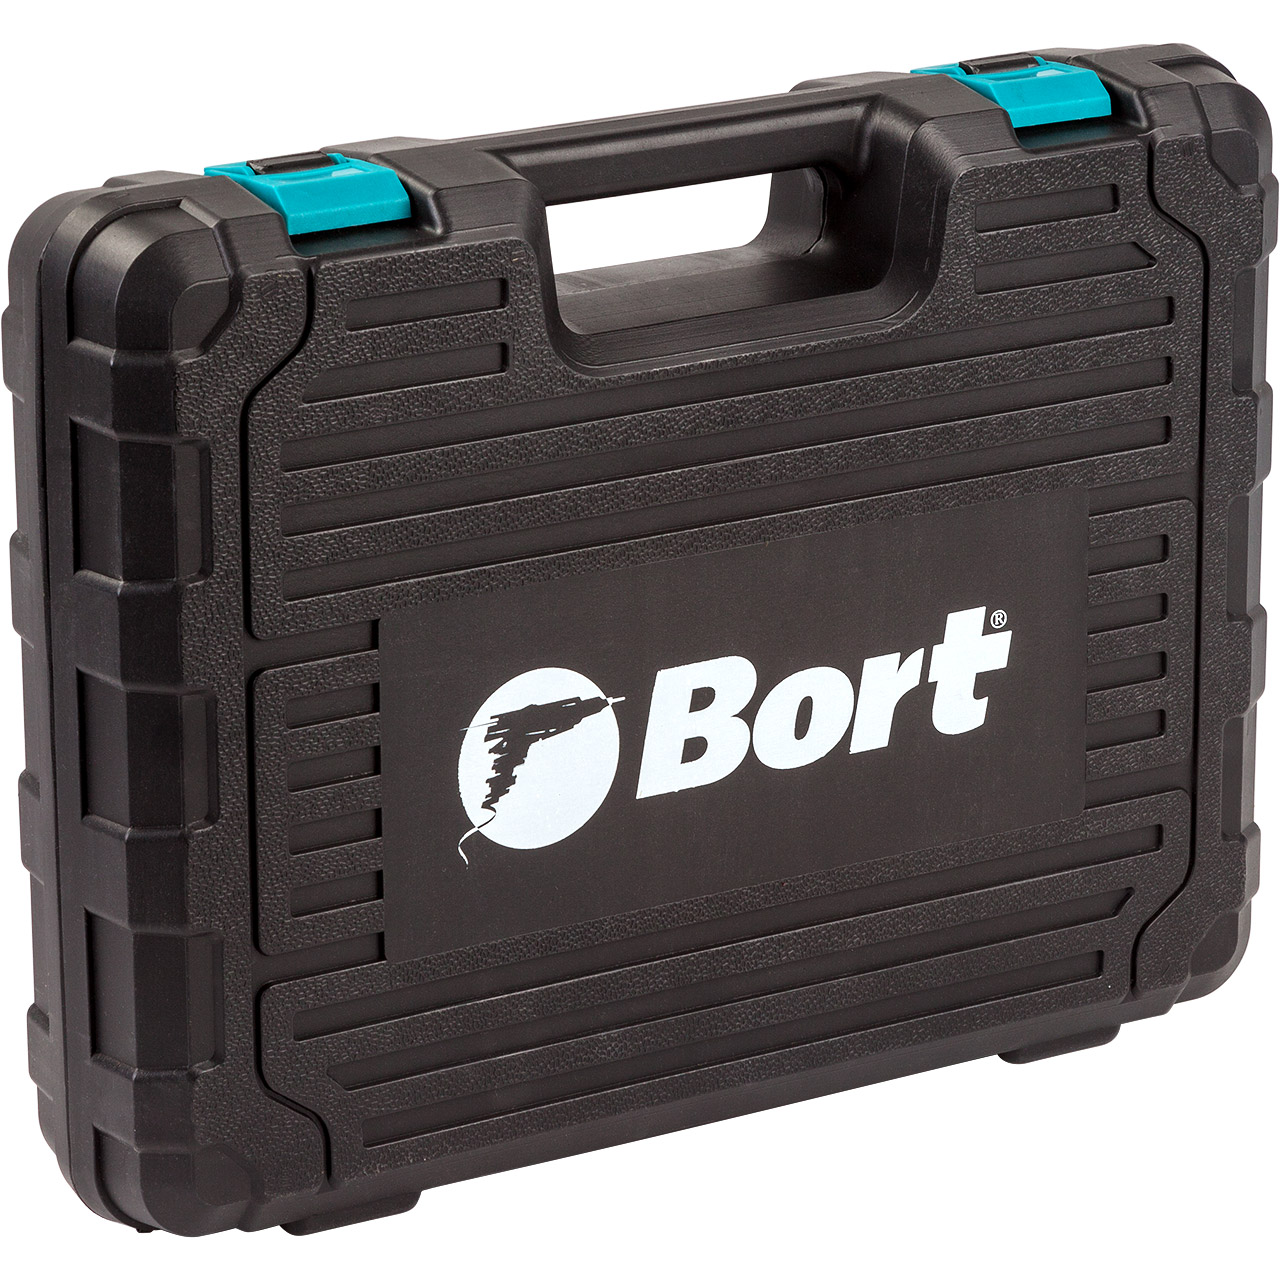 Набор ручного инструмента BORT BTK-100